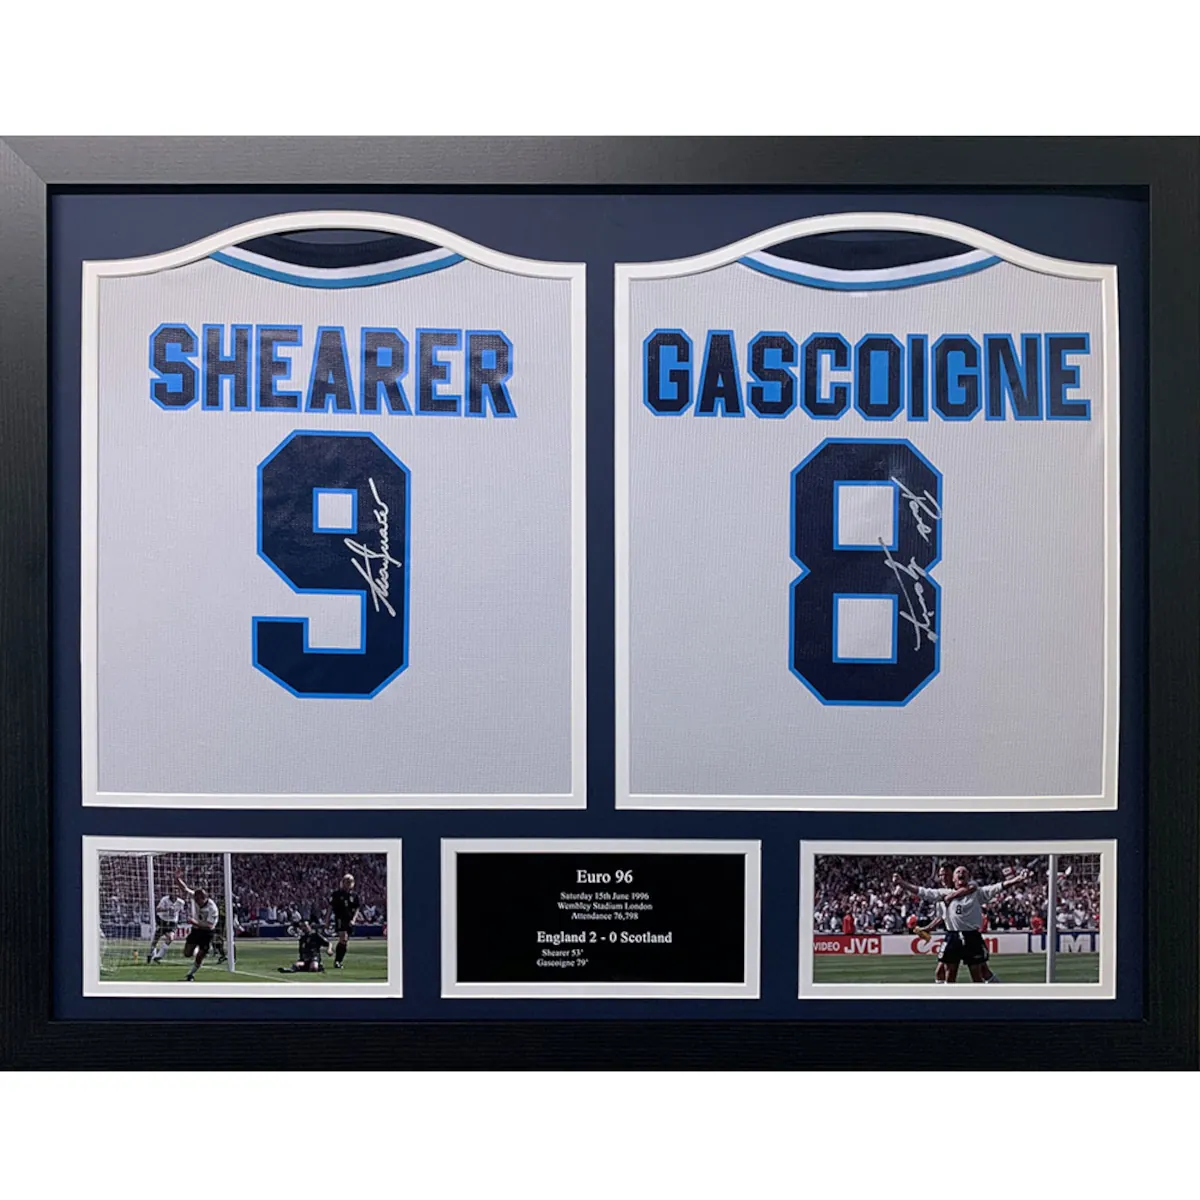 TM-00830 England F.A. Shearer & Gascoigne Dual Framed Signed Euro 96 Replica Football Shirts